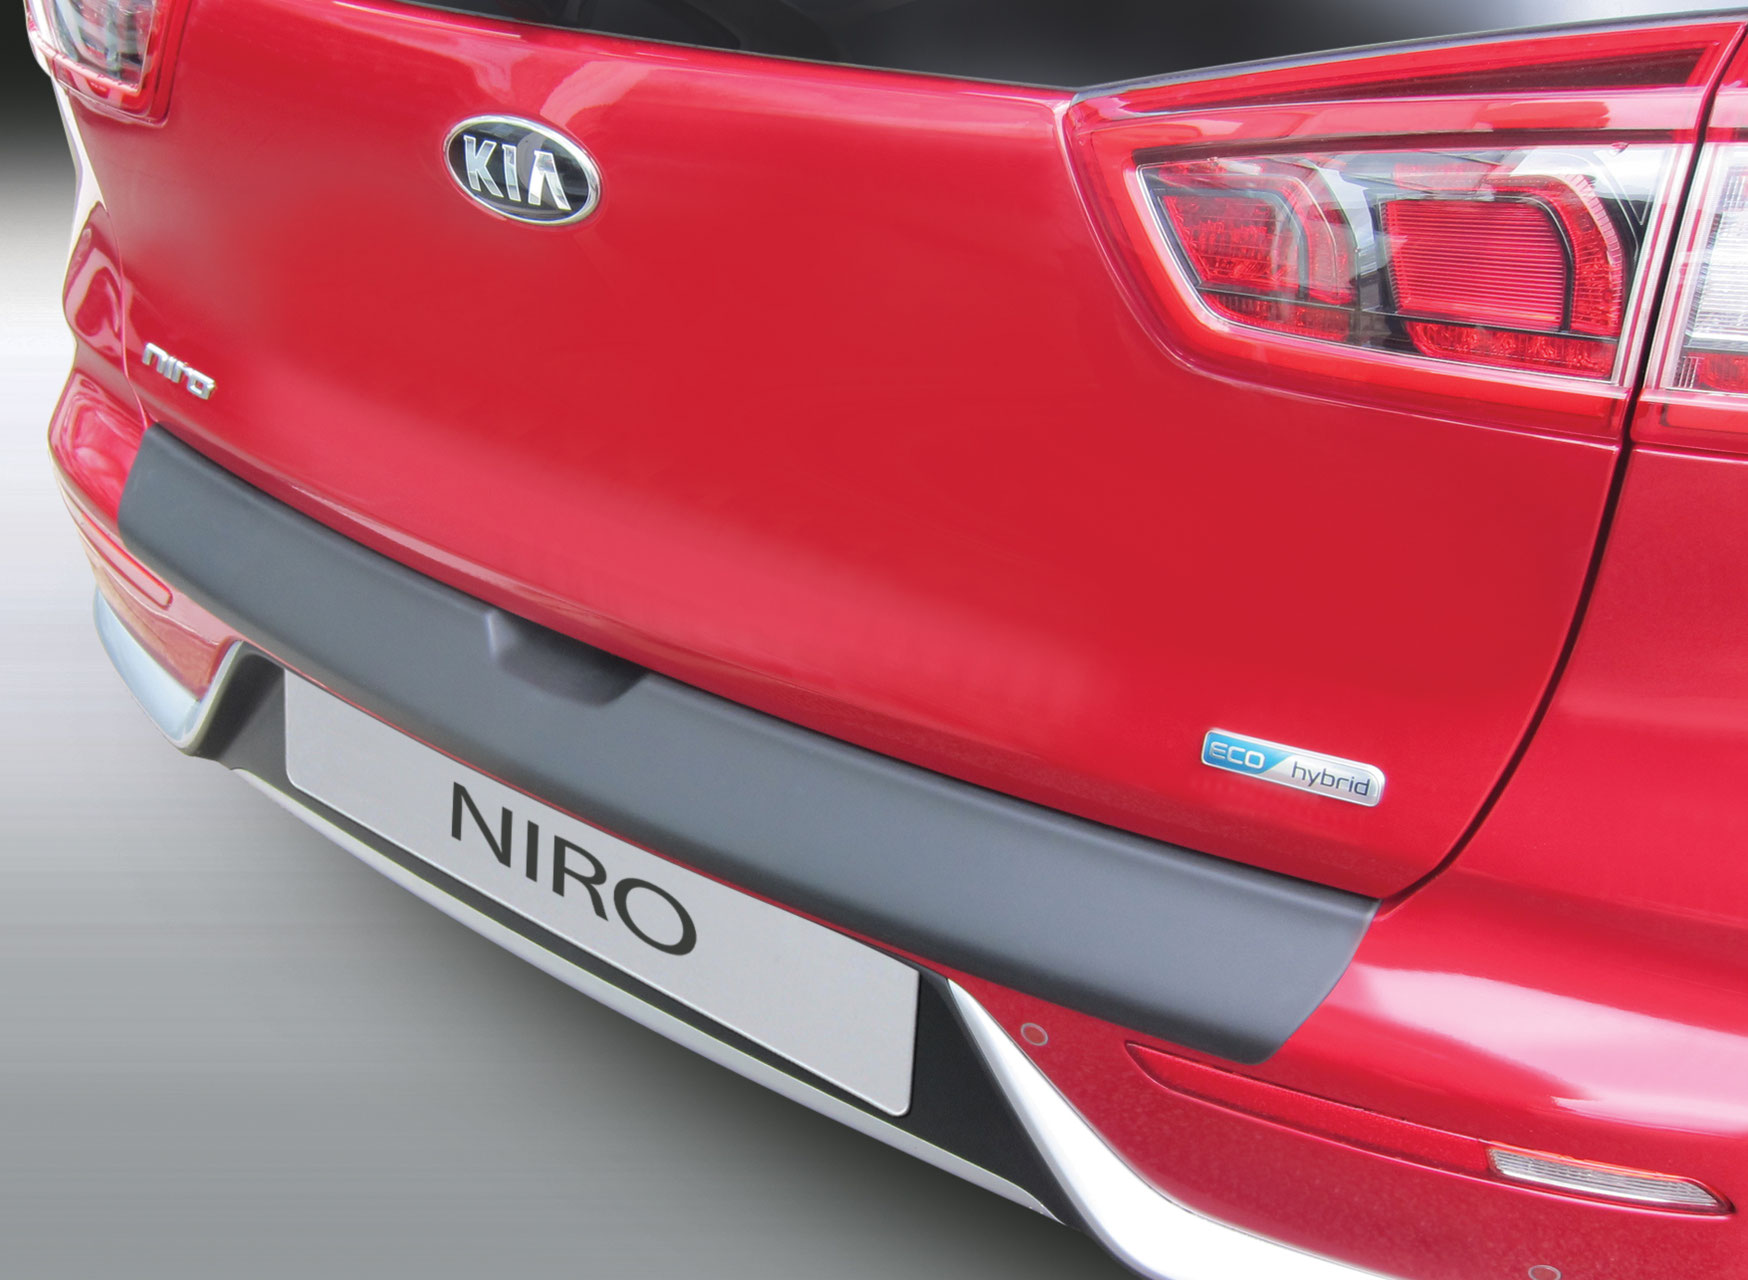 Ladekantenschutz für KIA NIRO - Schutz für die Ladekante Ihres Fahrzeuges